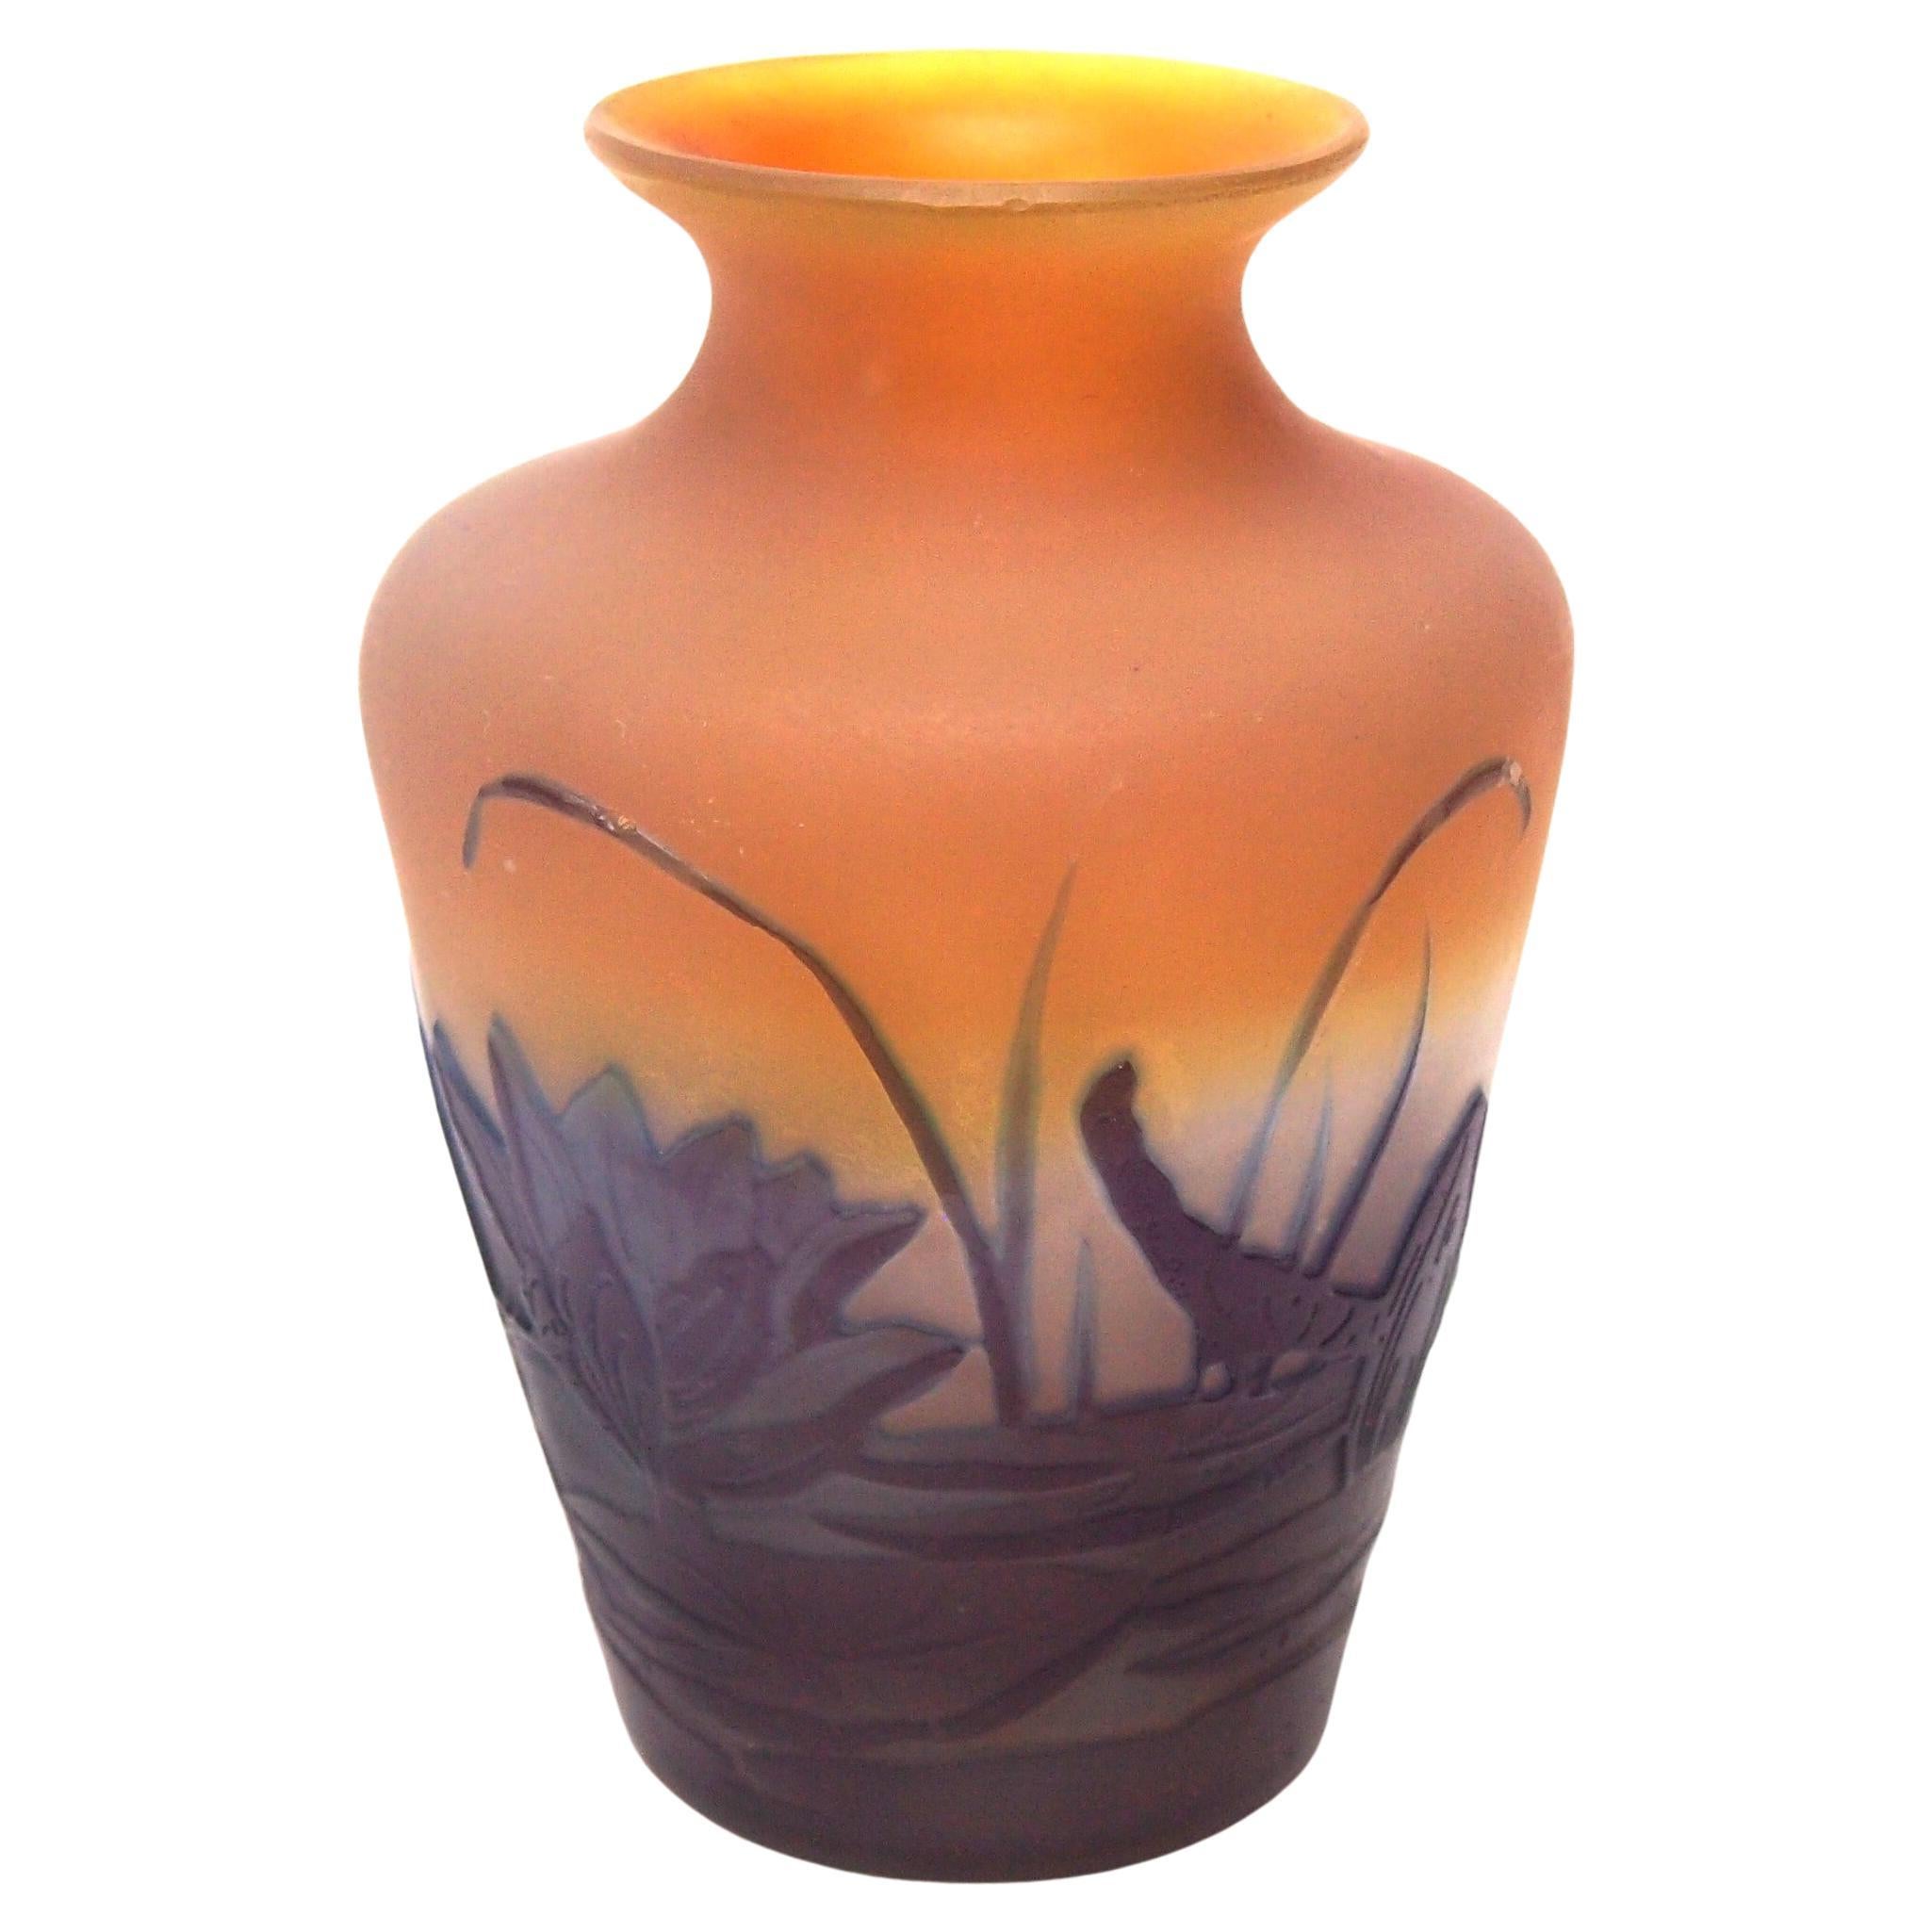 Französische Emile Galle Kamee-Vase aus Aquatischem Glas im Art nouveau-Stil mit Teichszene  c1920